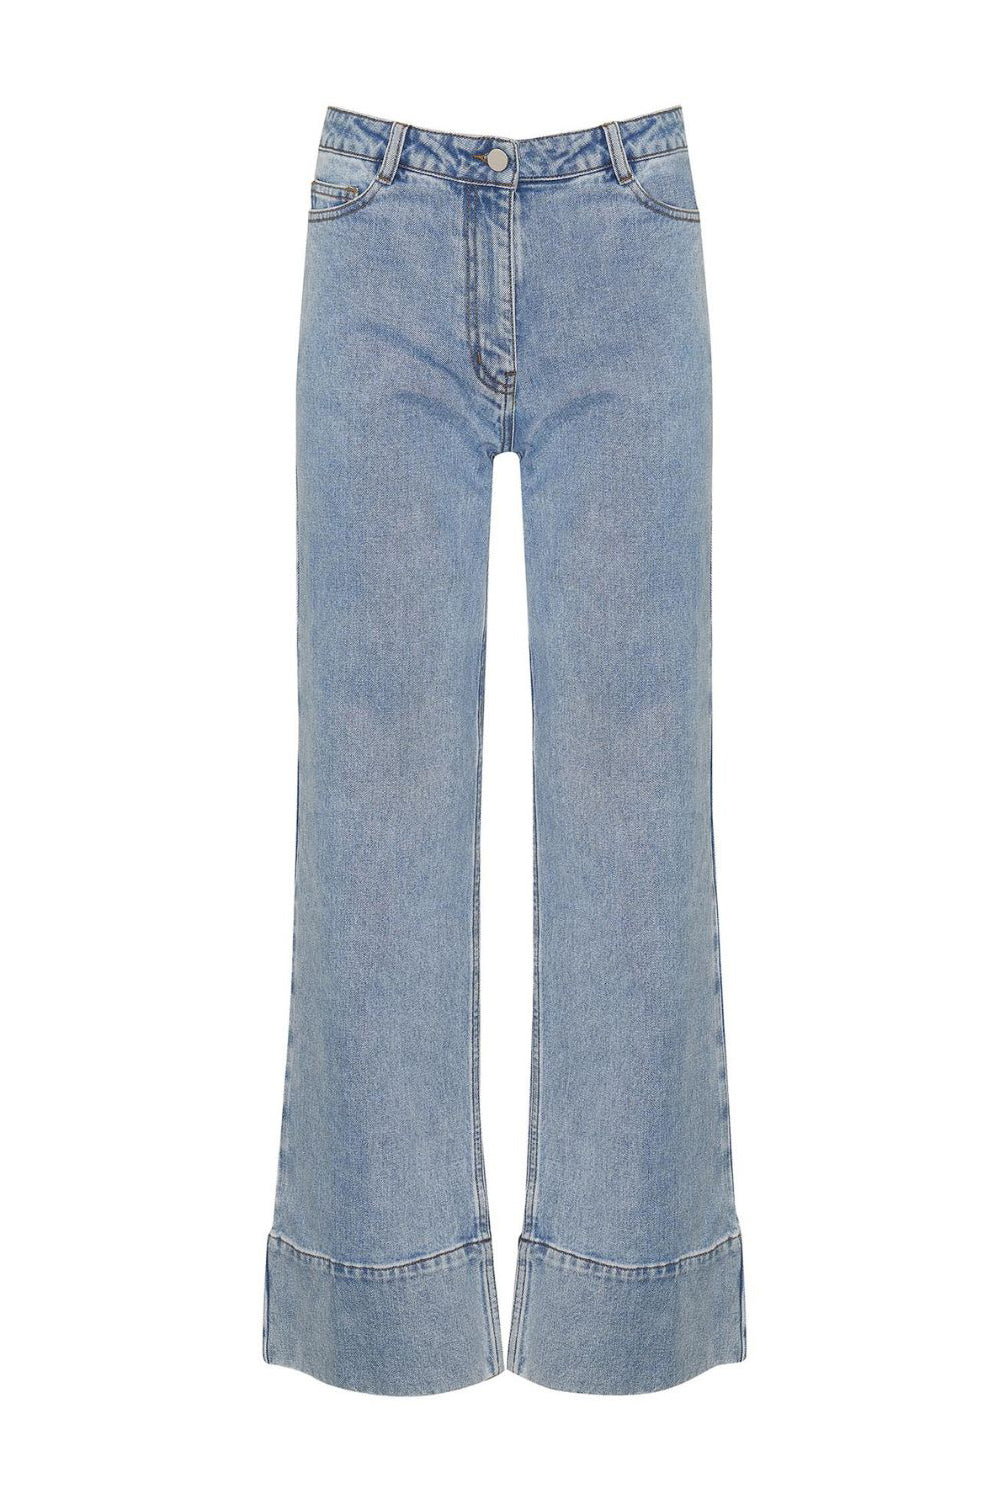 Zoe Kratzmann Magnet Jeans Washed Denim